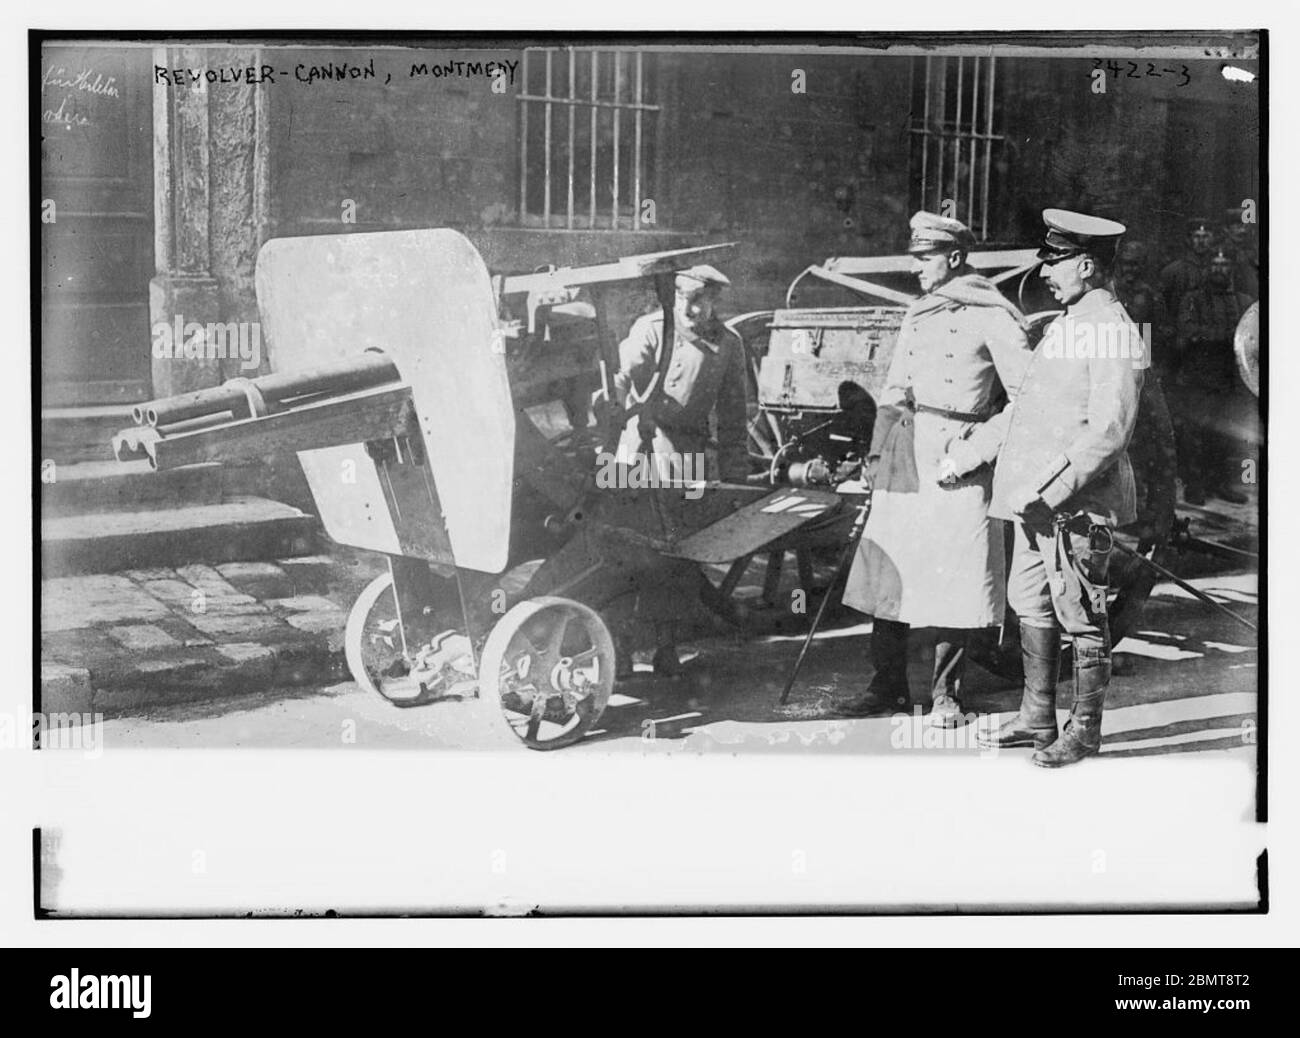 Revolver - Cannon, Montmedy (LOC) dalla Biblioteca del Congresso Foto Stock